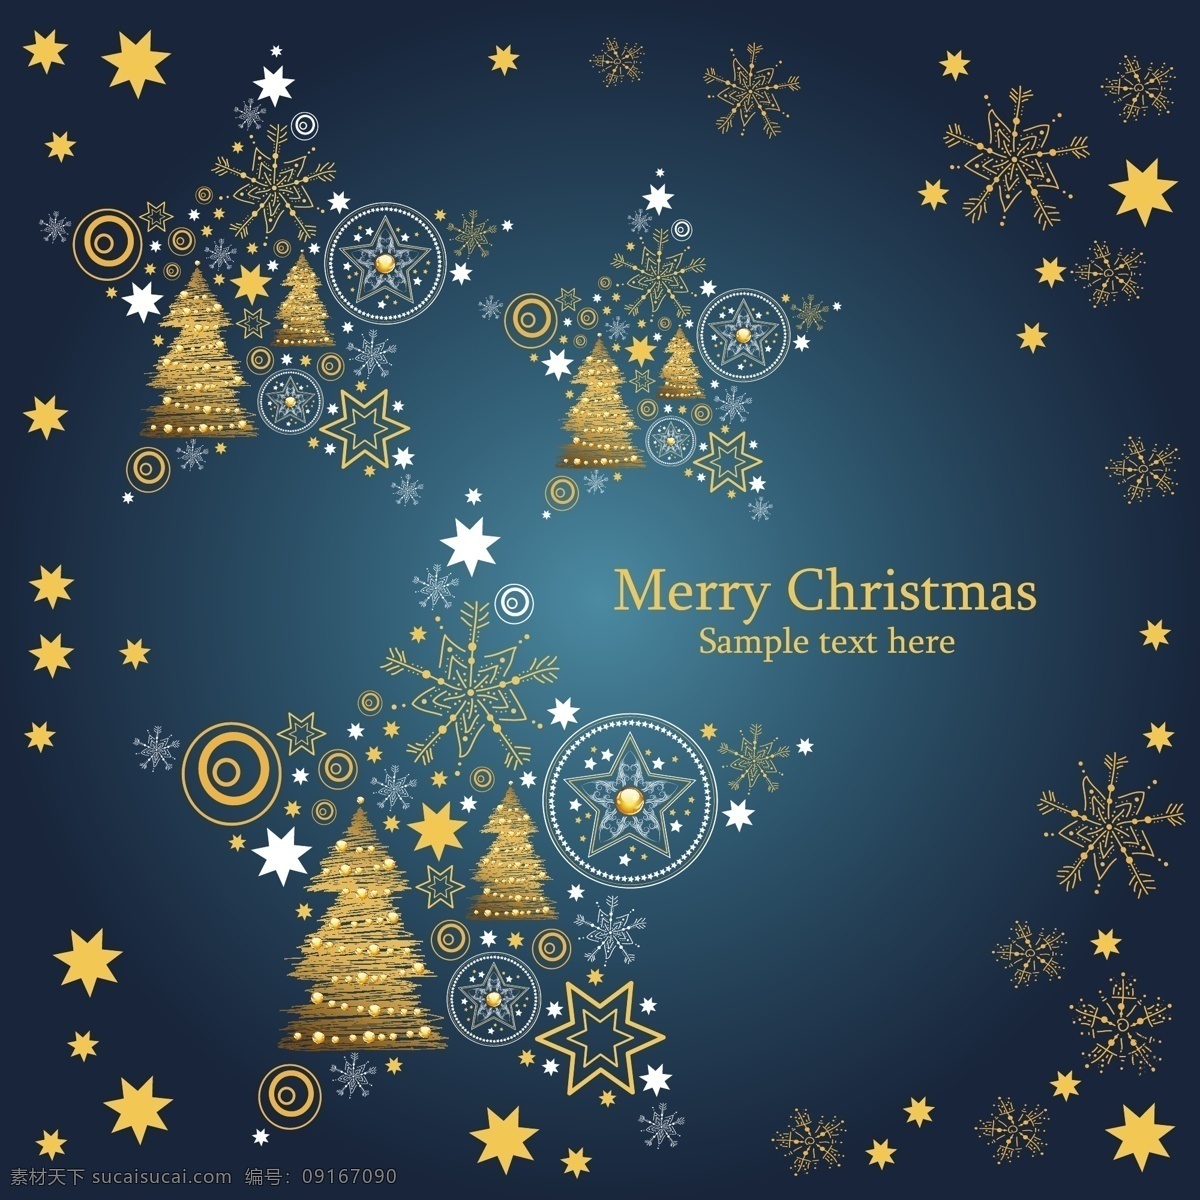 圣诞节 背景 模板 christmas merry 渐变 设计稿 松树 同心圆 五角星 雪花 图案 节日大全 源文件 节日素材